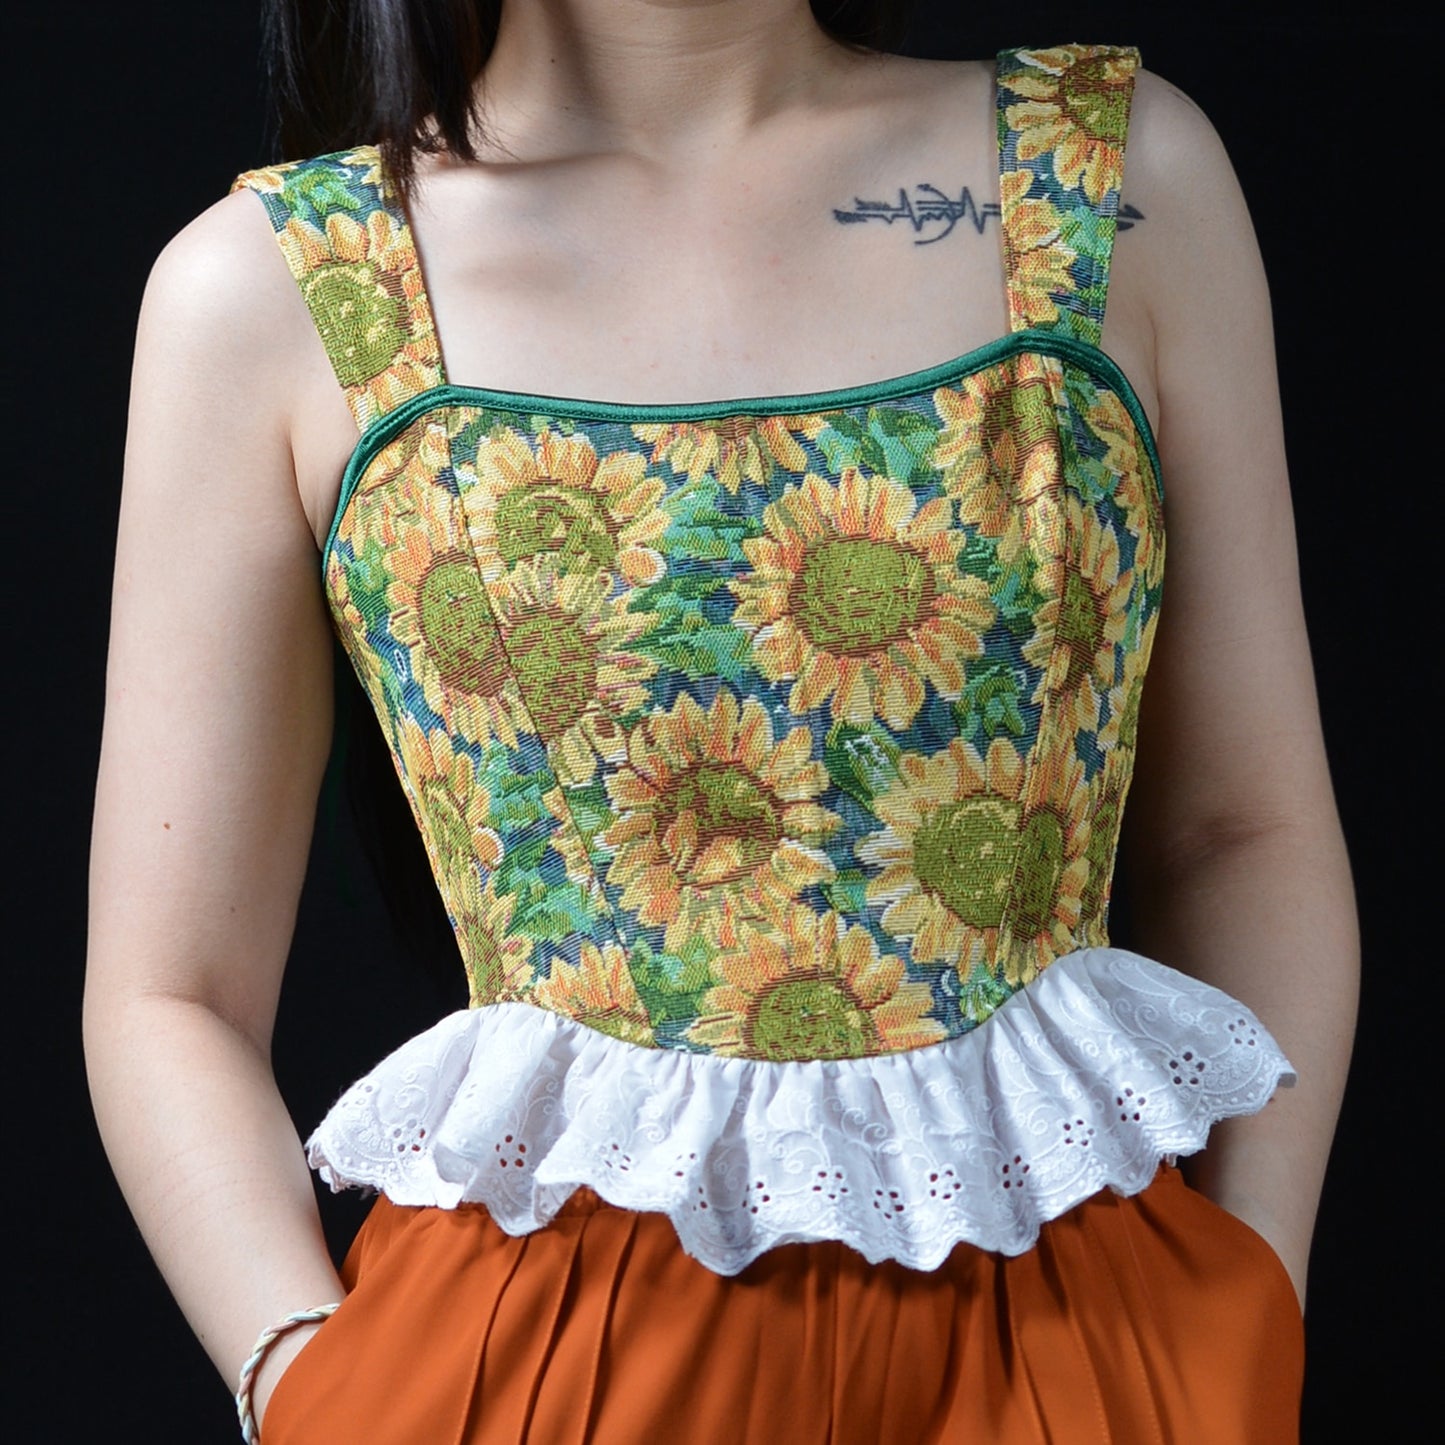 Haut corset tapisserie tournesol Van Gogh